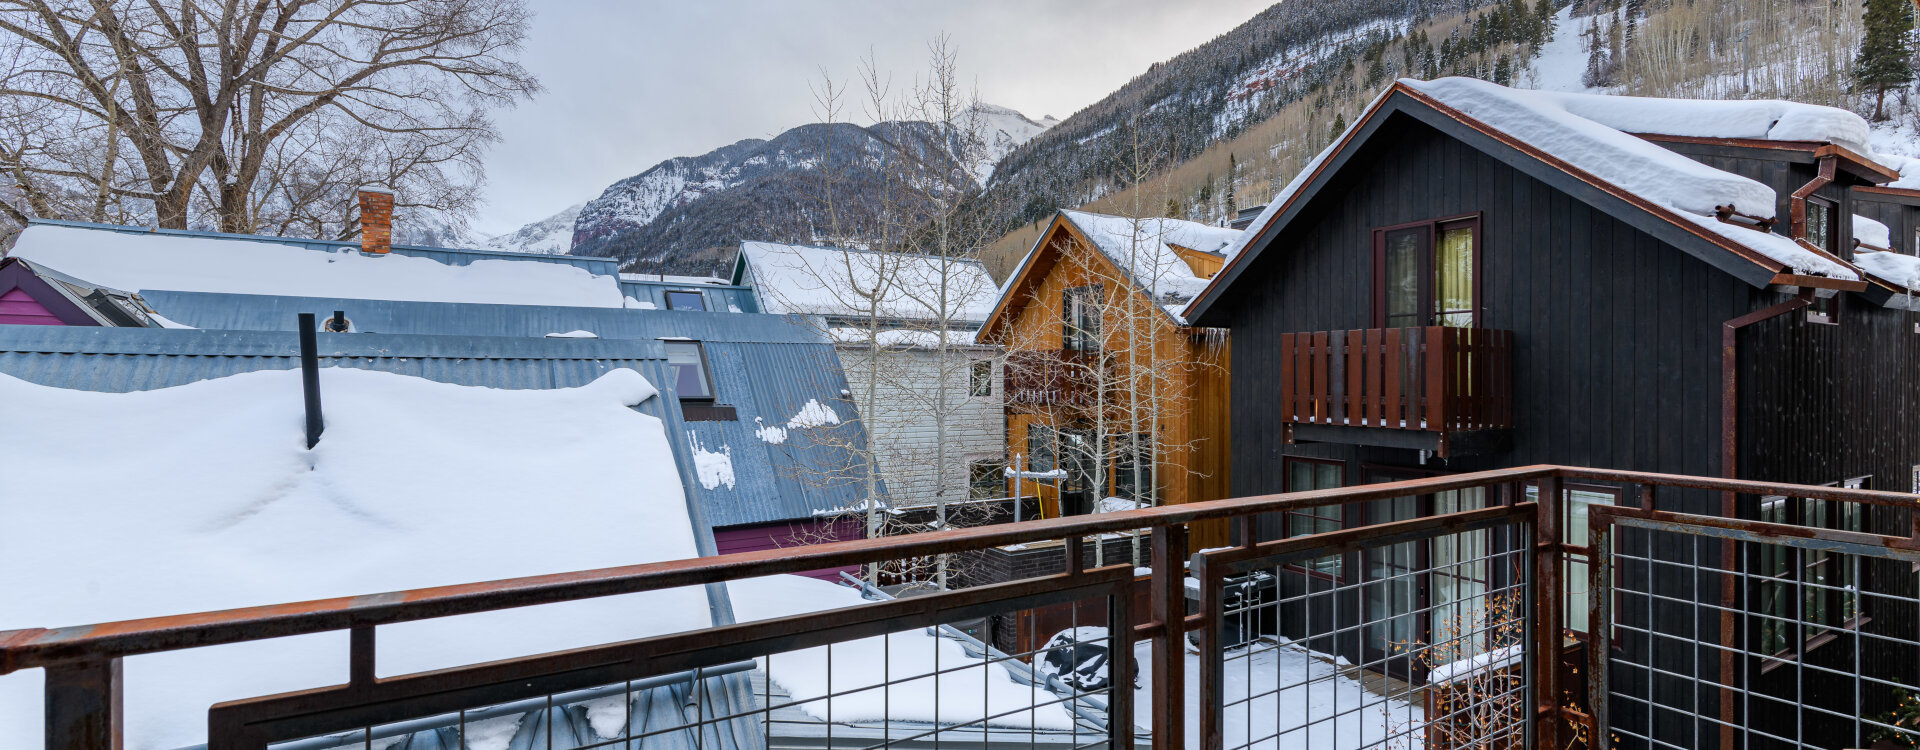 3.08-telluride-local-luxury-winter-deck-view